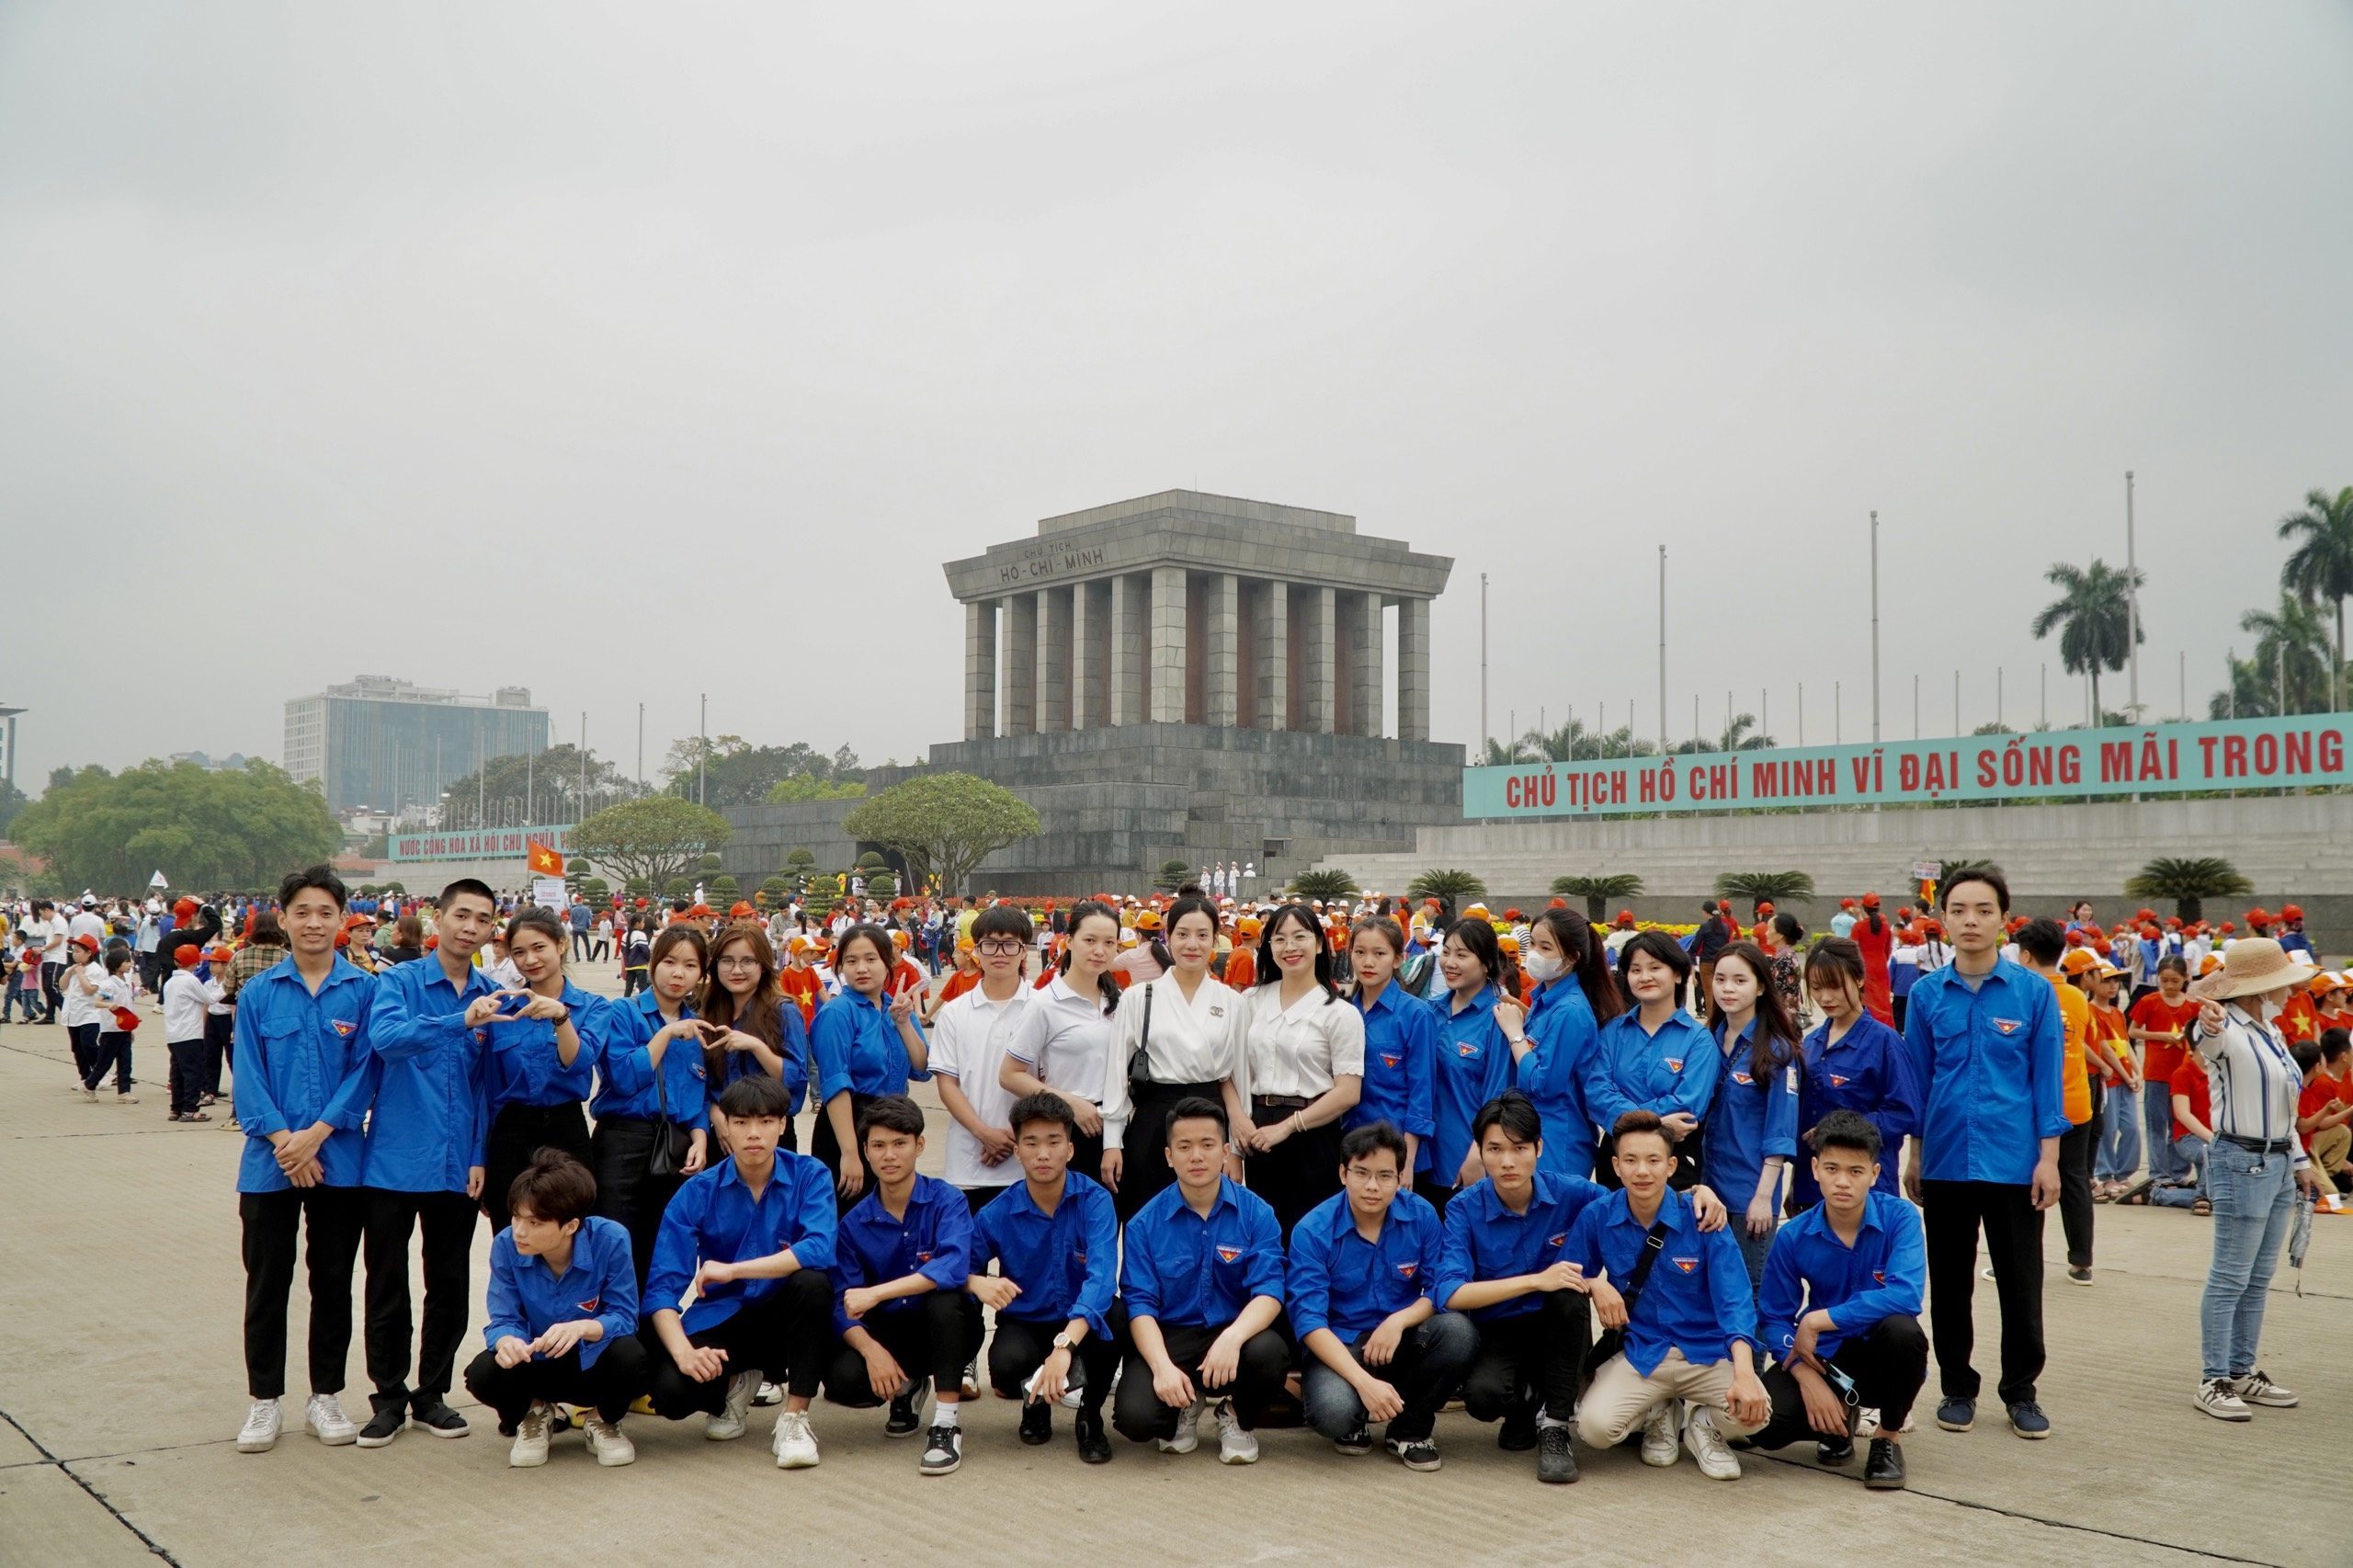 Đoàn sinh viên viếng lăng Bác và tham quan khu di tích Chủ tịch Hồ Chí Minh